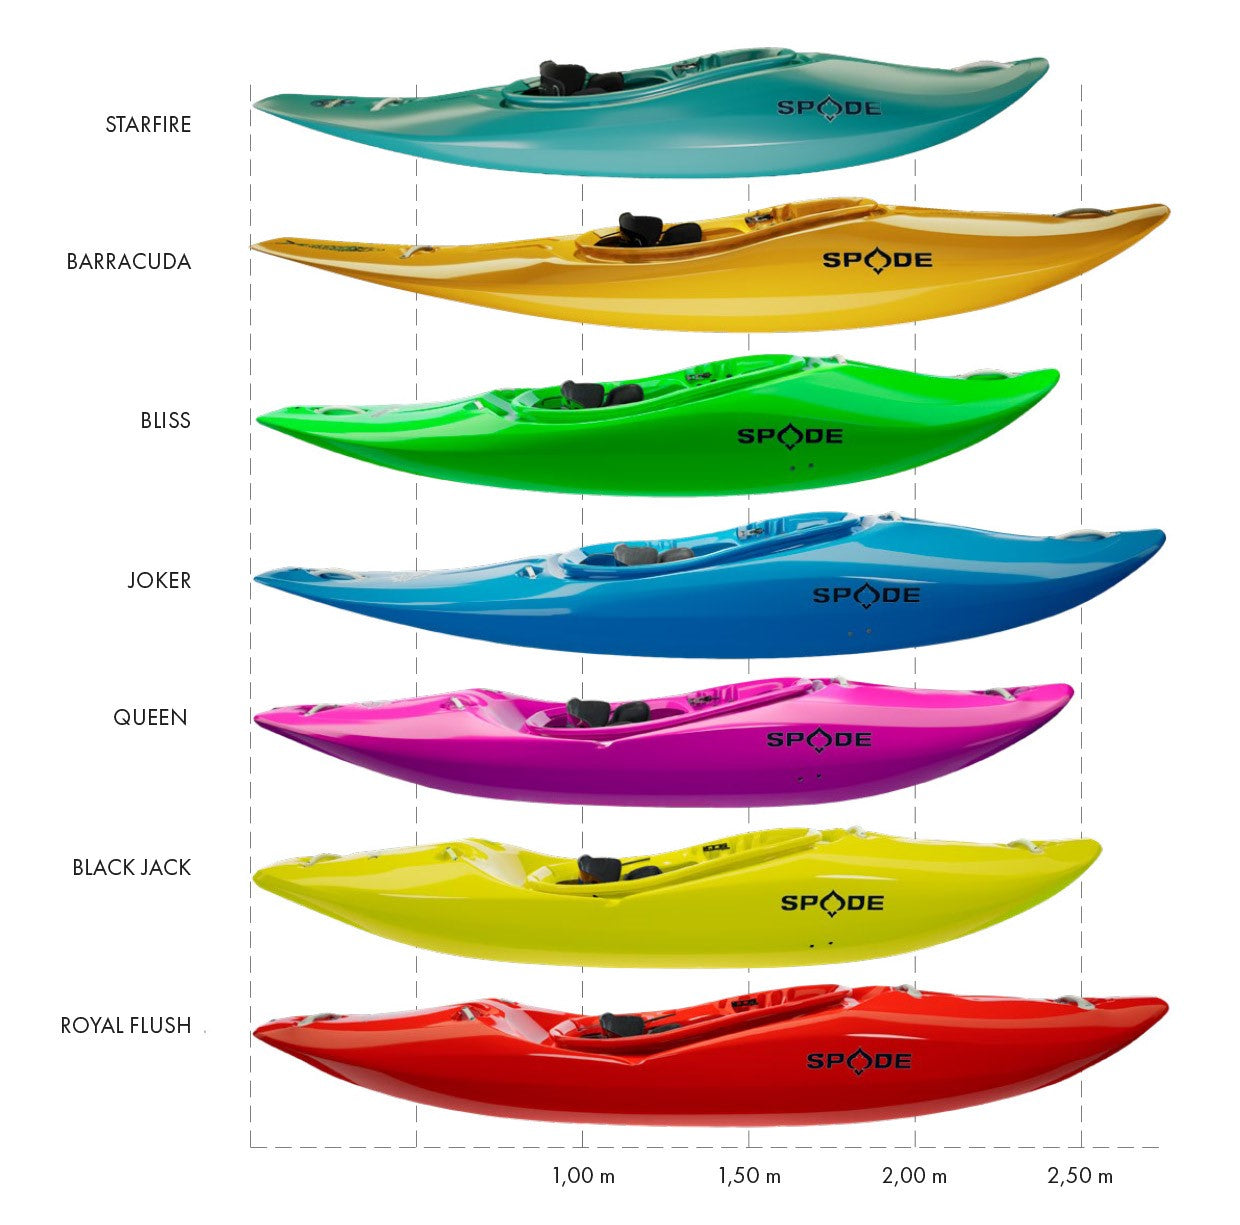 Spade Kayaks Direktvertrieb - wieso, warum und wie gehts jetzt weiter? (Teil 1)